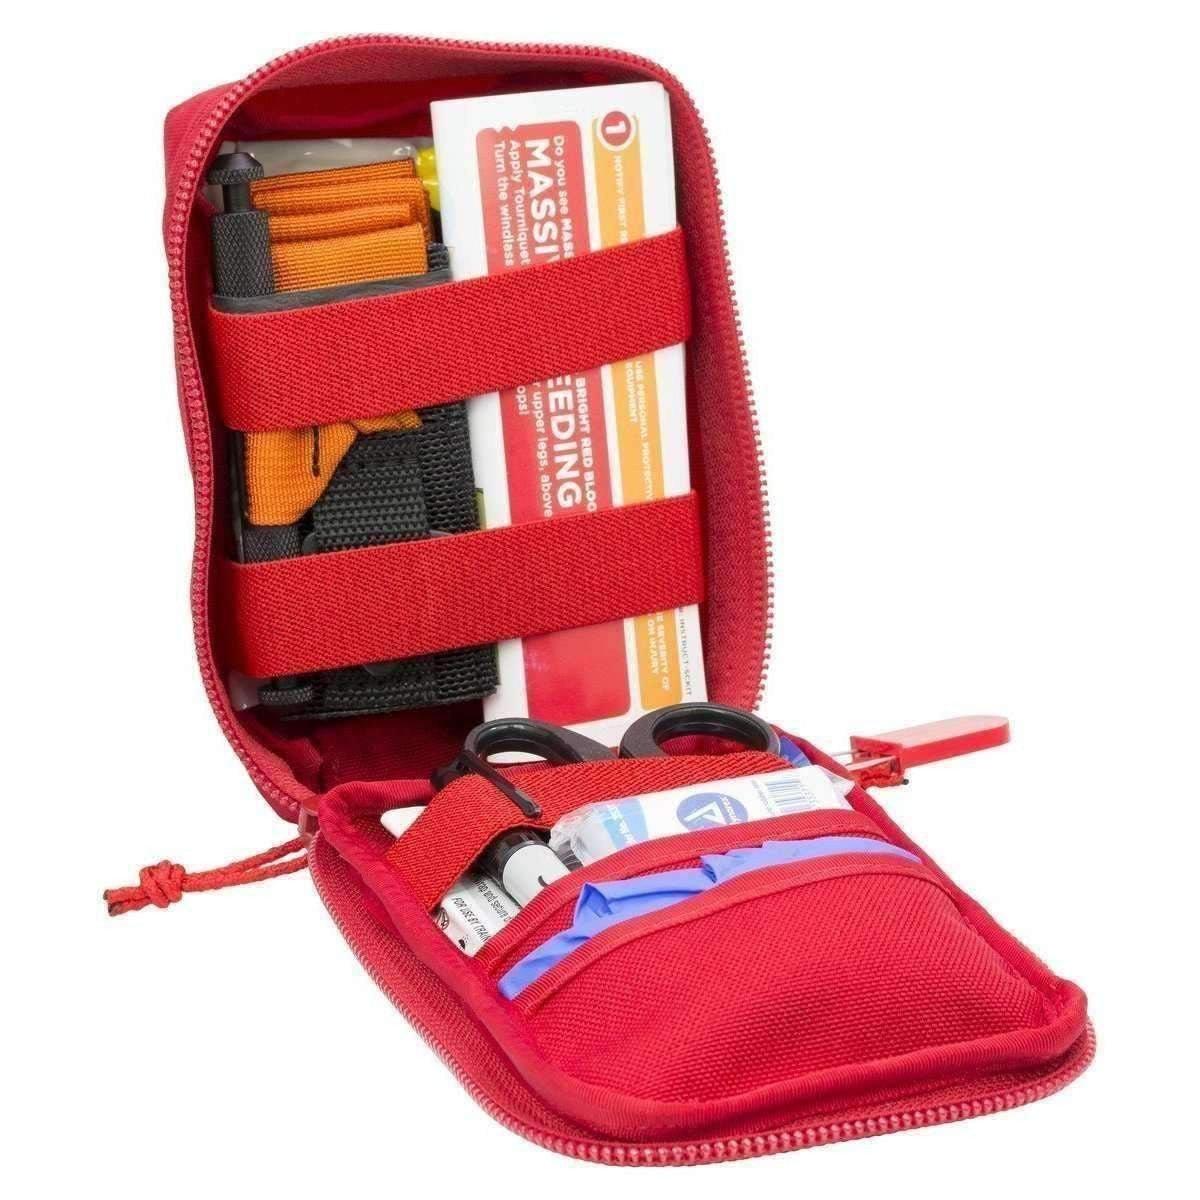 TRAMEDIC Bleeding Control Kit for Schools - Vendor